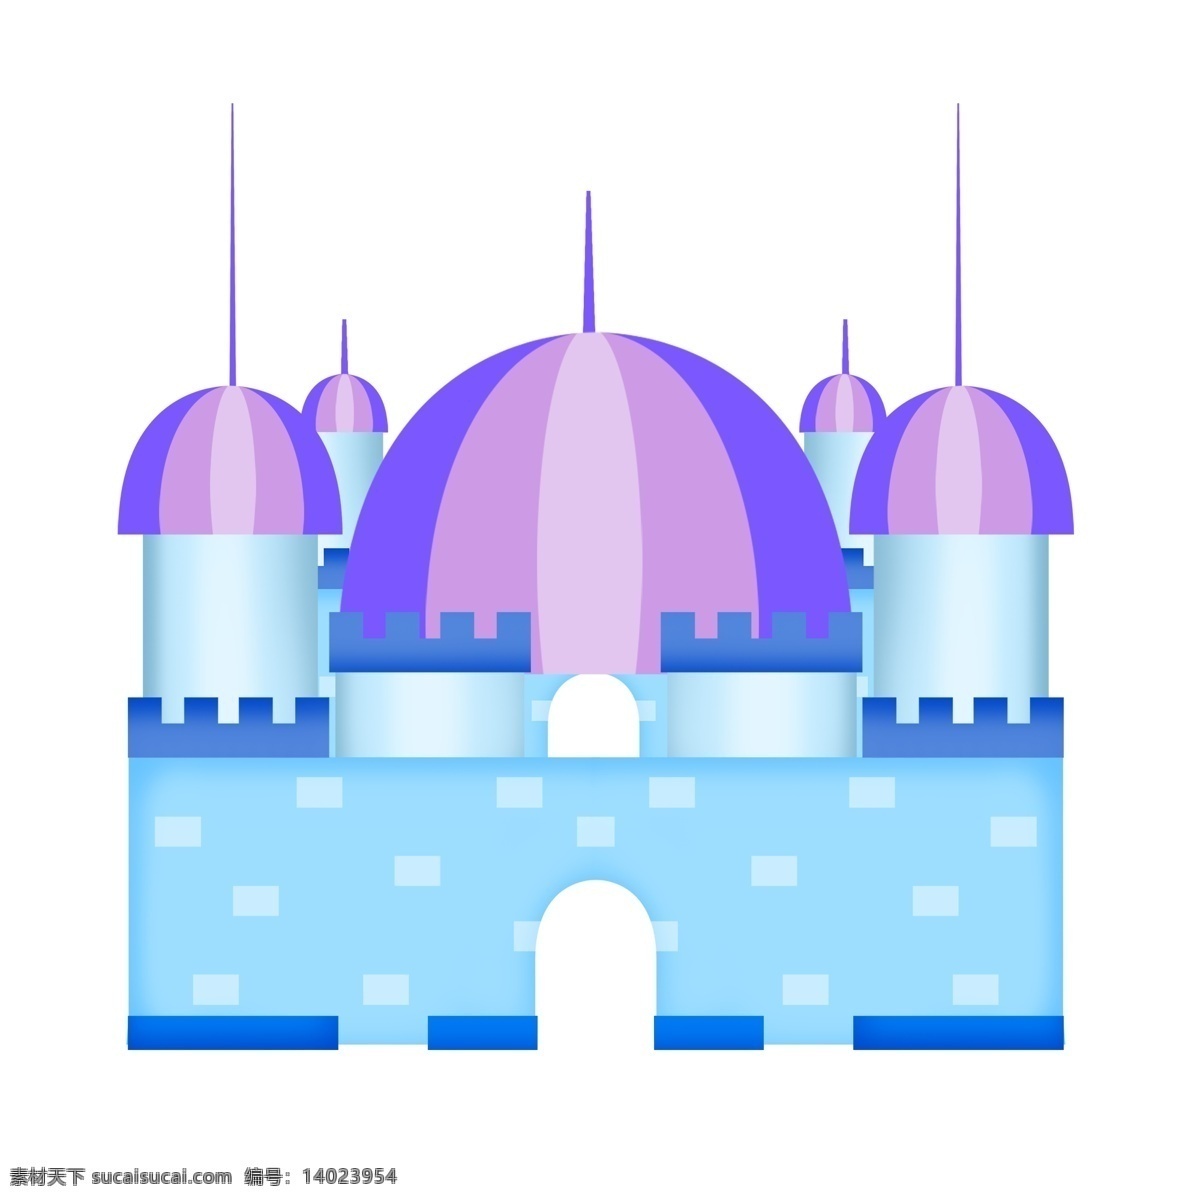 梦幻 欧式 城堡 公主 王子 房子 蓝色 圆顶 建筑